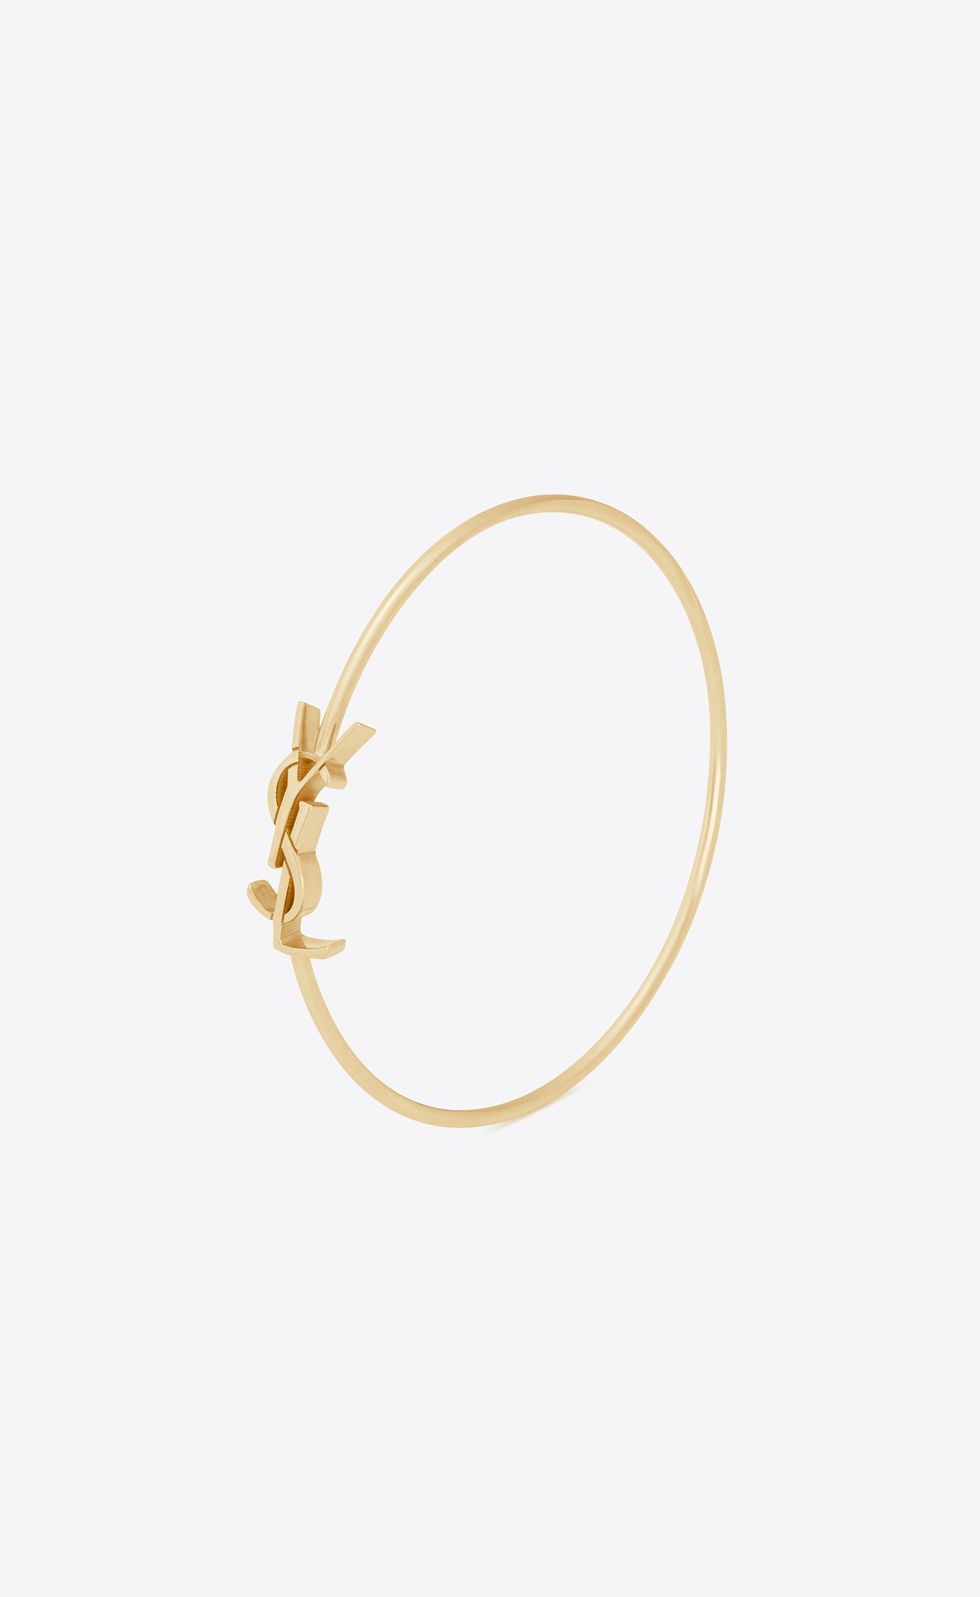 Yves Saint Laurent Monogram Bracelet (Gold) - Large